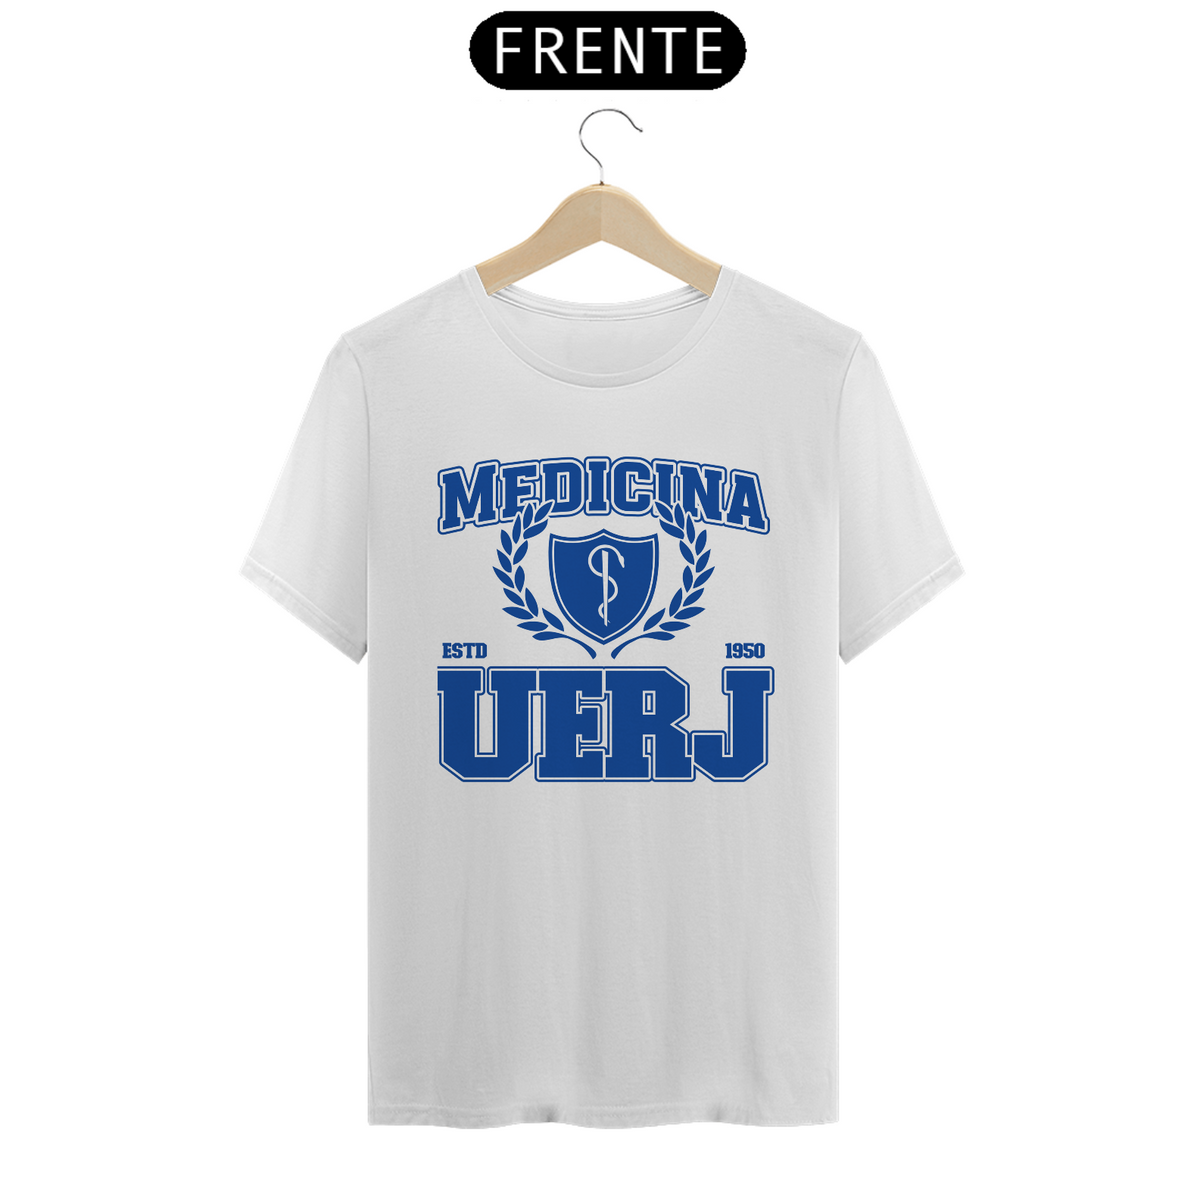 Nome do produto: UniVerso- Medicina Uerj